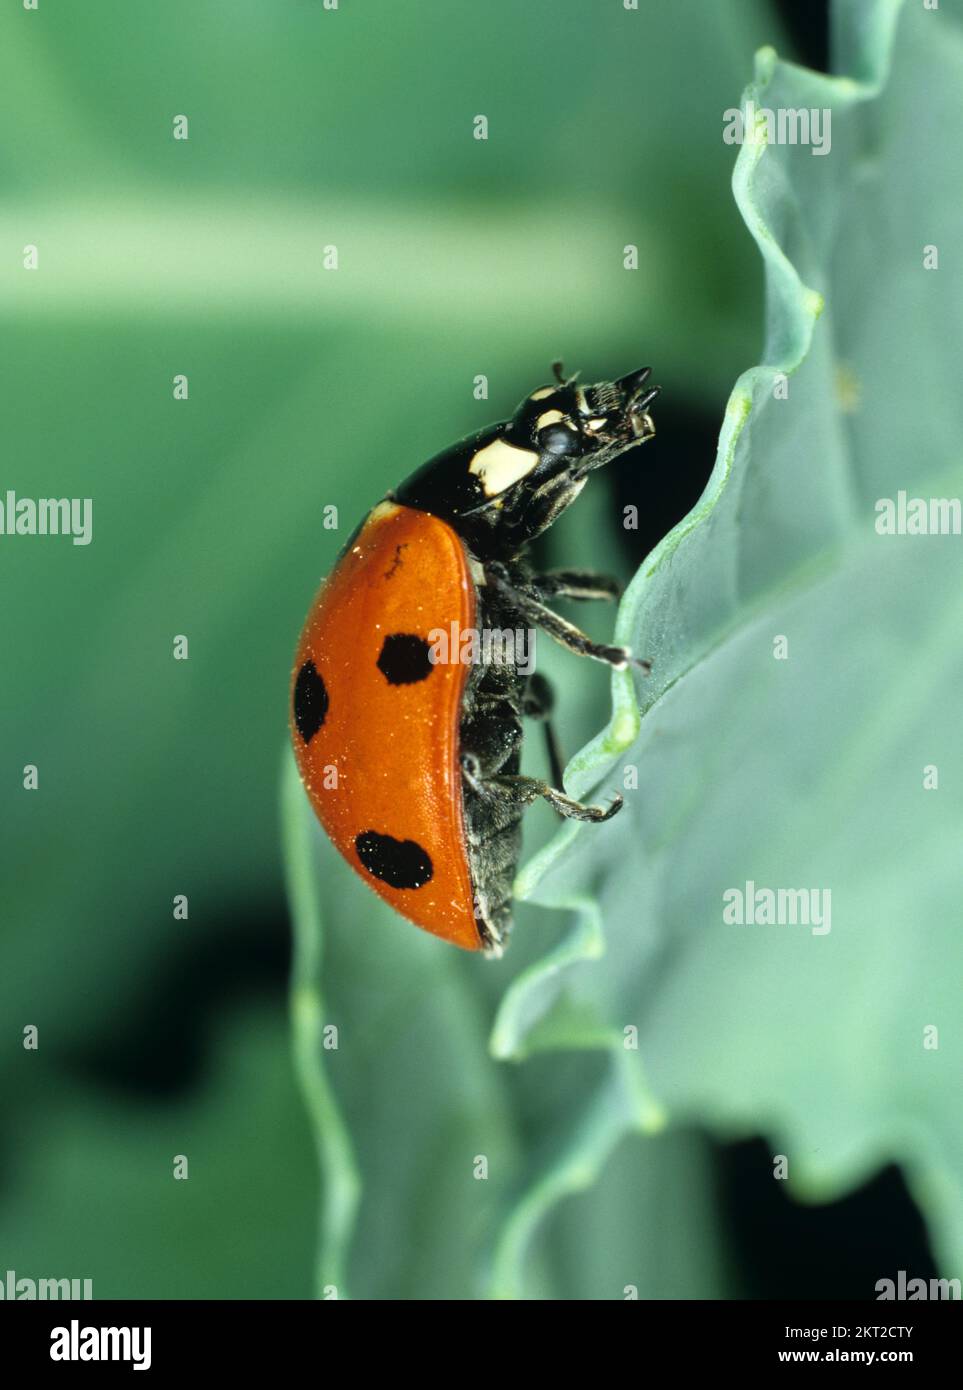 Ladybird (Coccinella septumpunctata) vue latérale d'un ladybird adulte sur une feuille de chou Banque D'Images